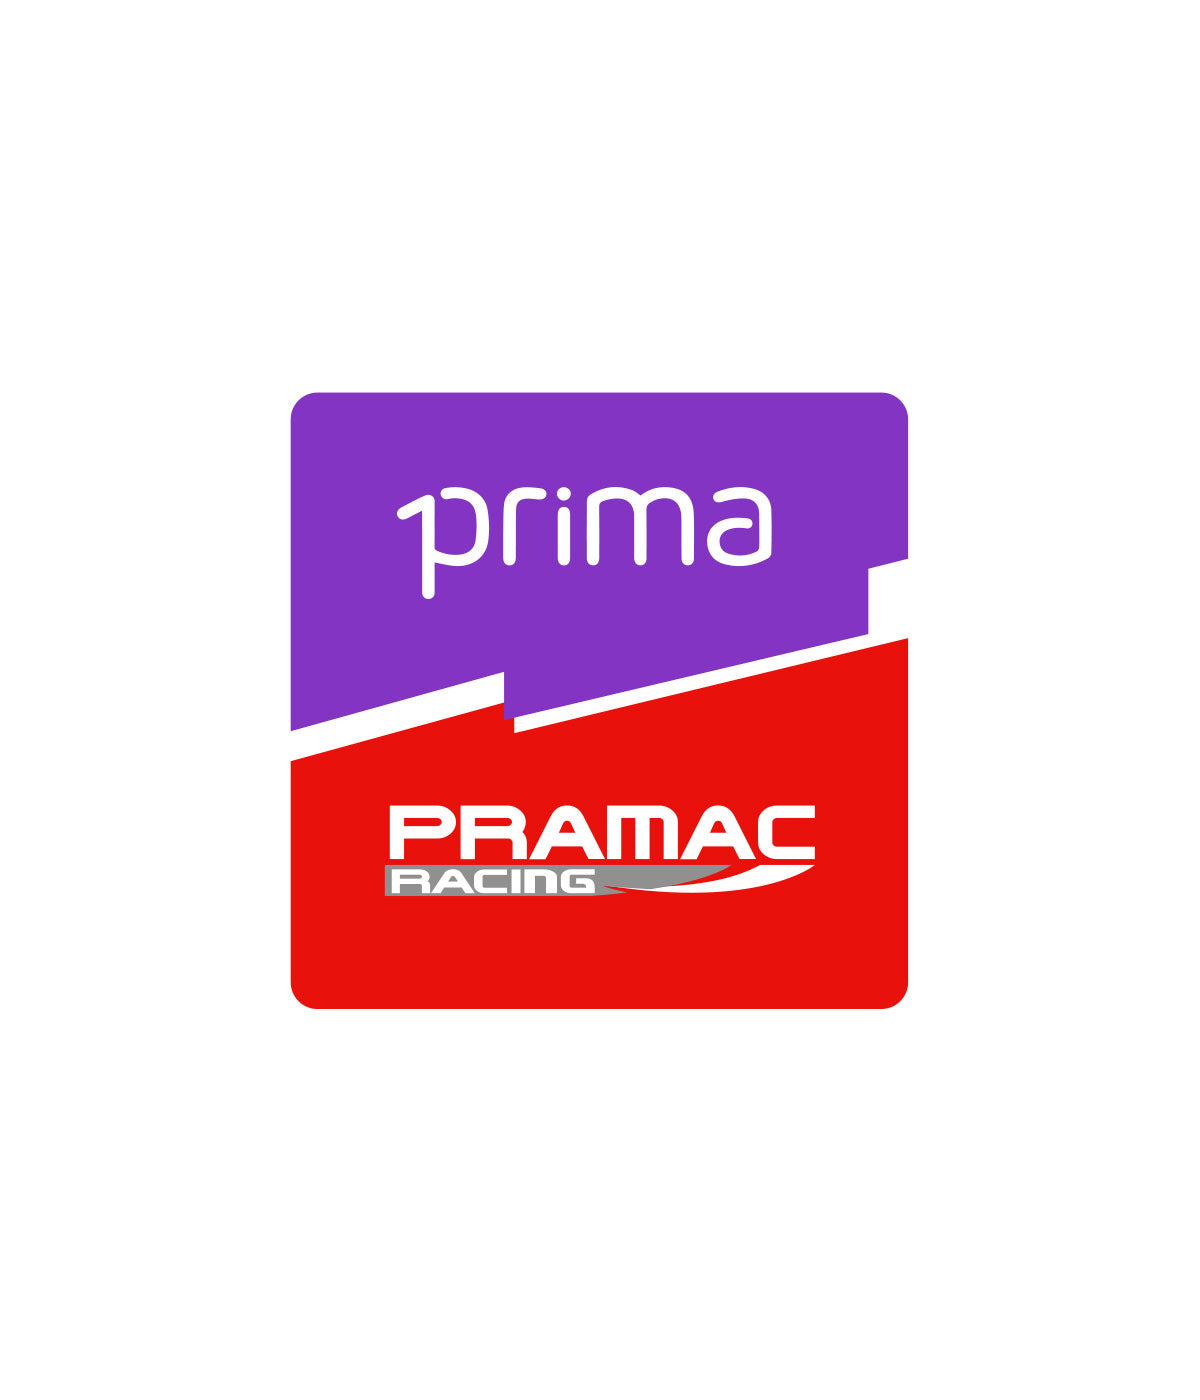 Prima Pramac Racing